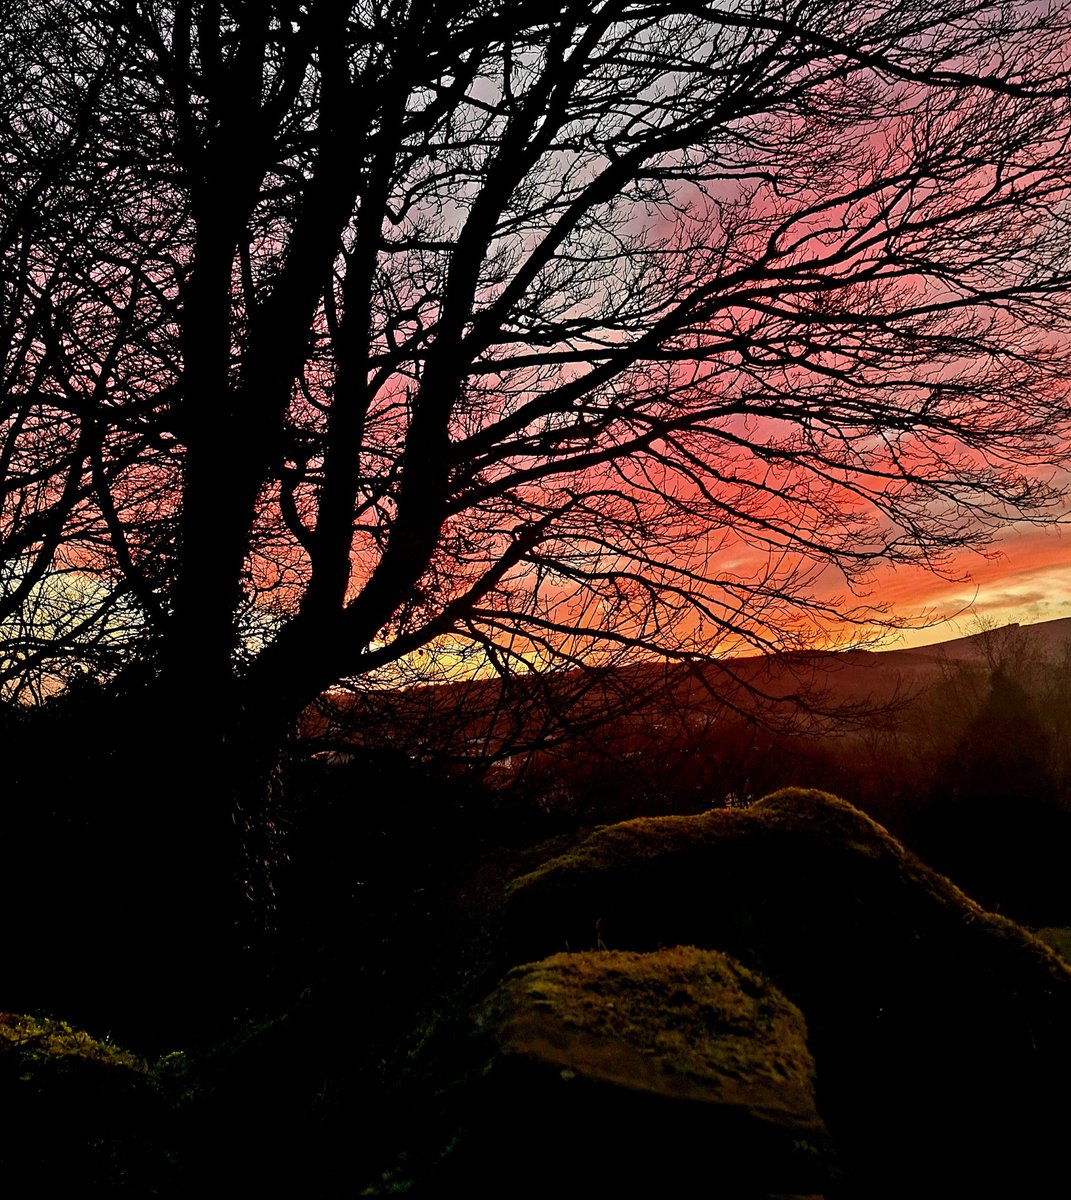 Backgarden timeline cleanser.
Pink skies over Clare. 
#loughderg